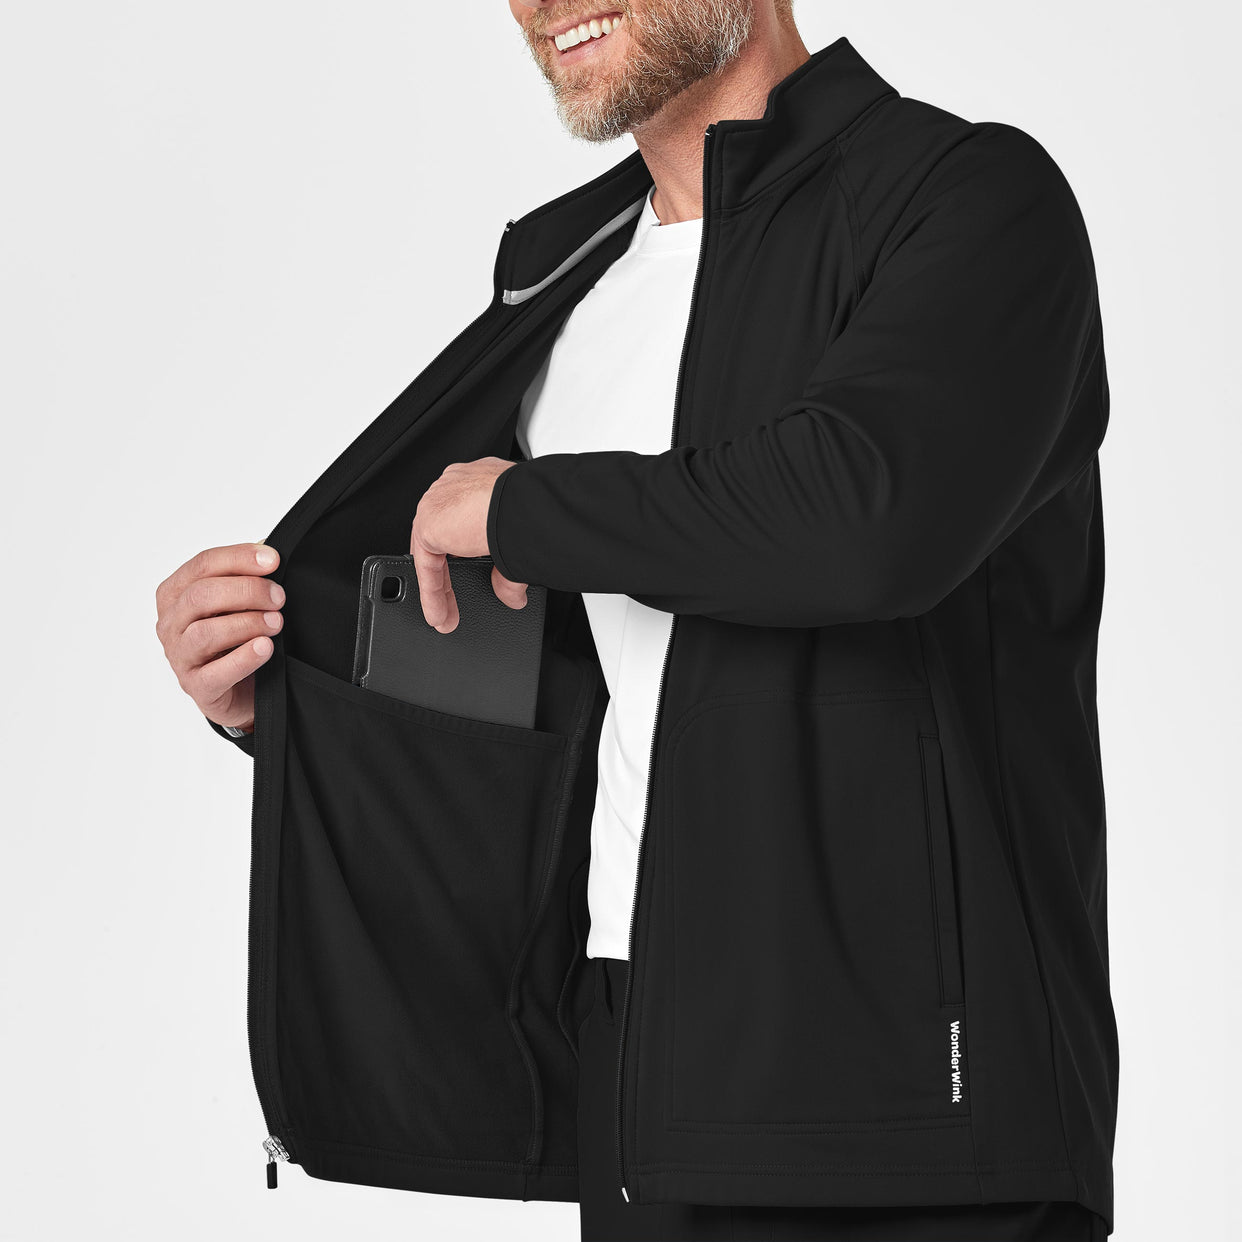 Men's Fleece Full Zip Jacket - Black